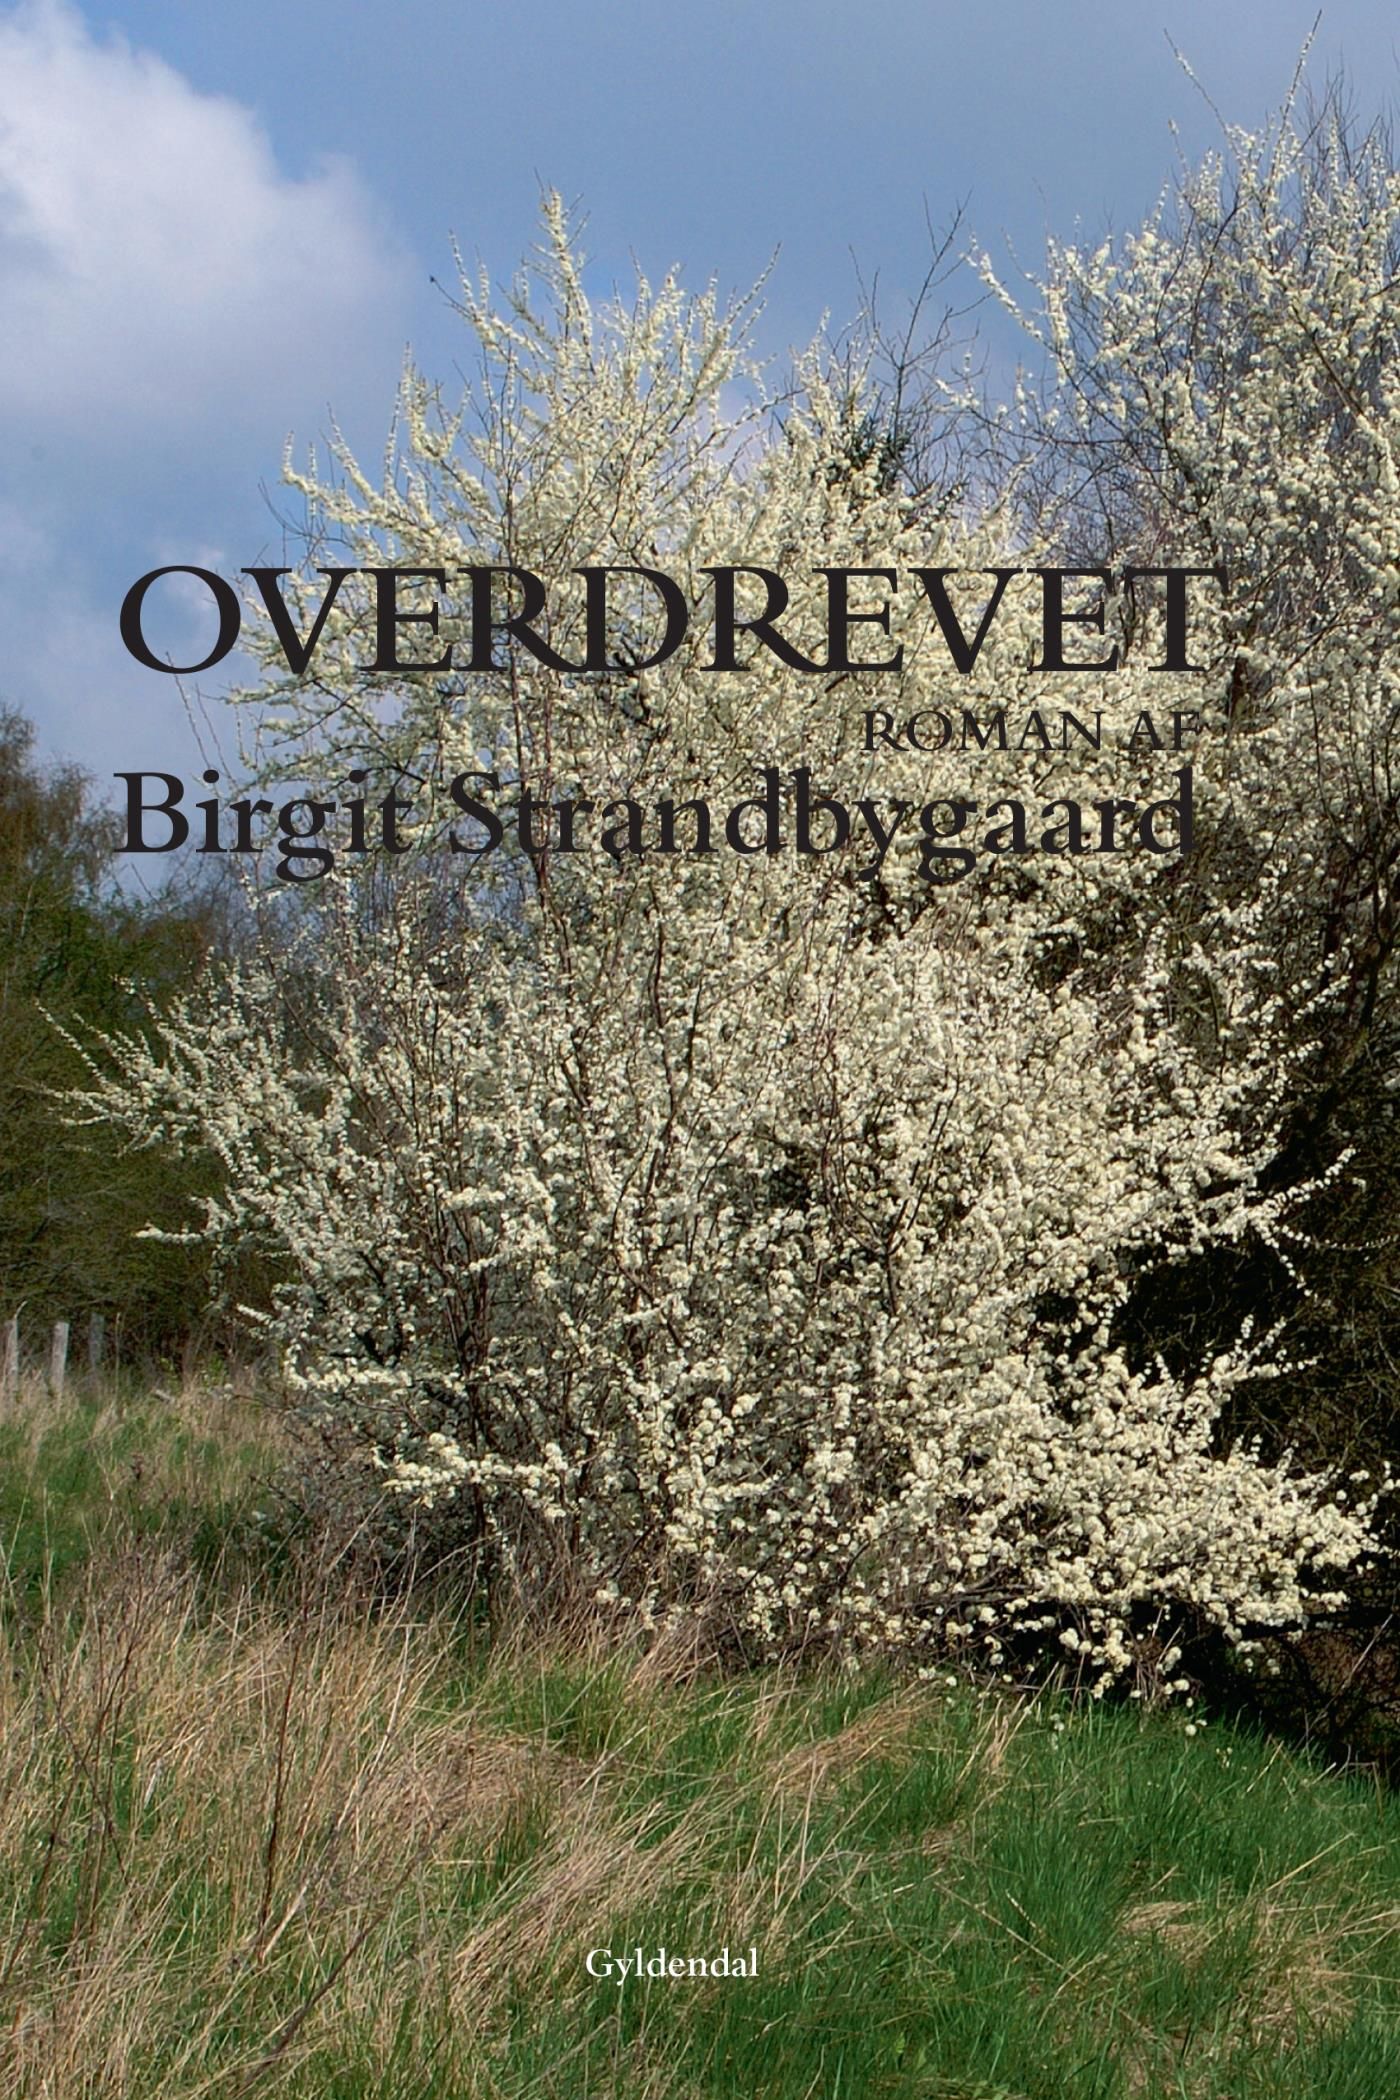 Overdrevet, e-bok av Birgit Strandbygaard